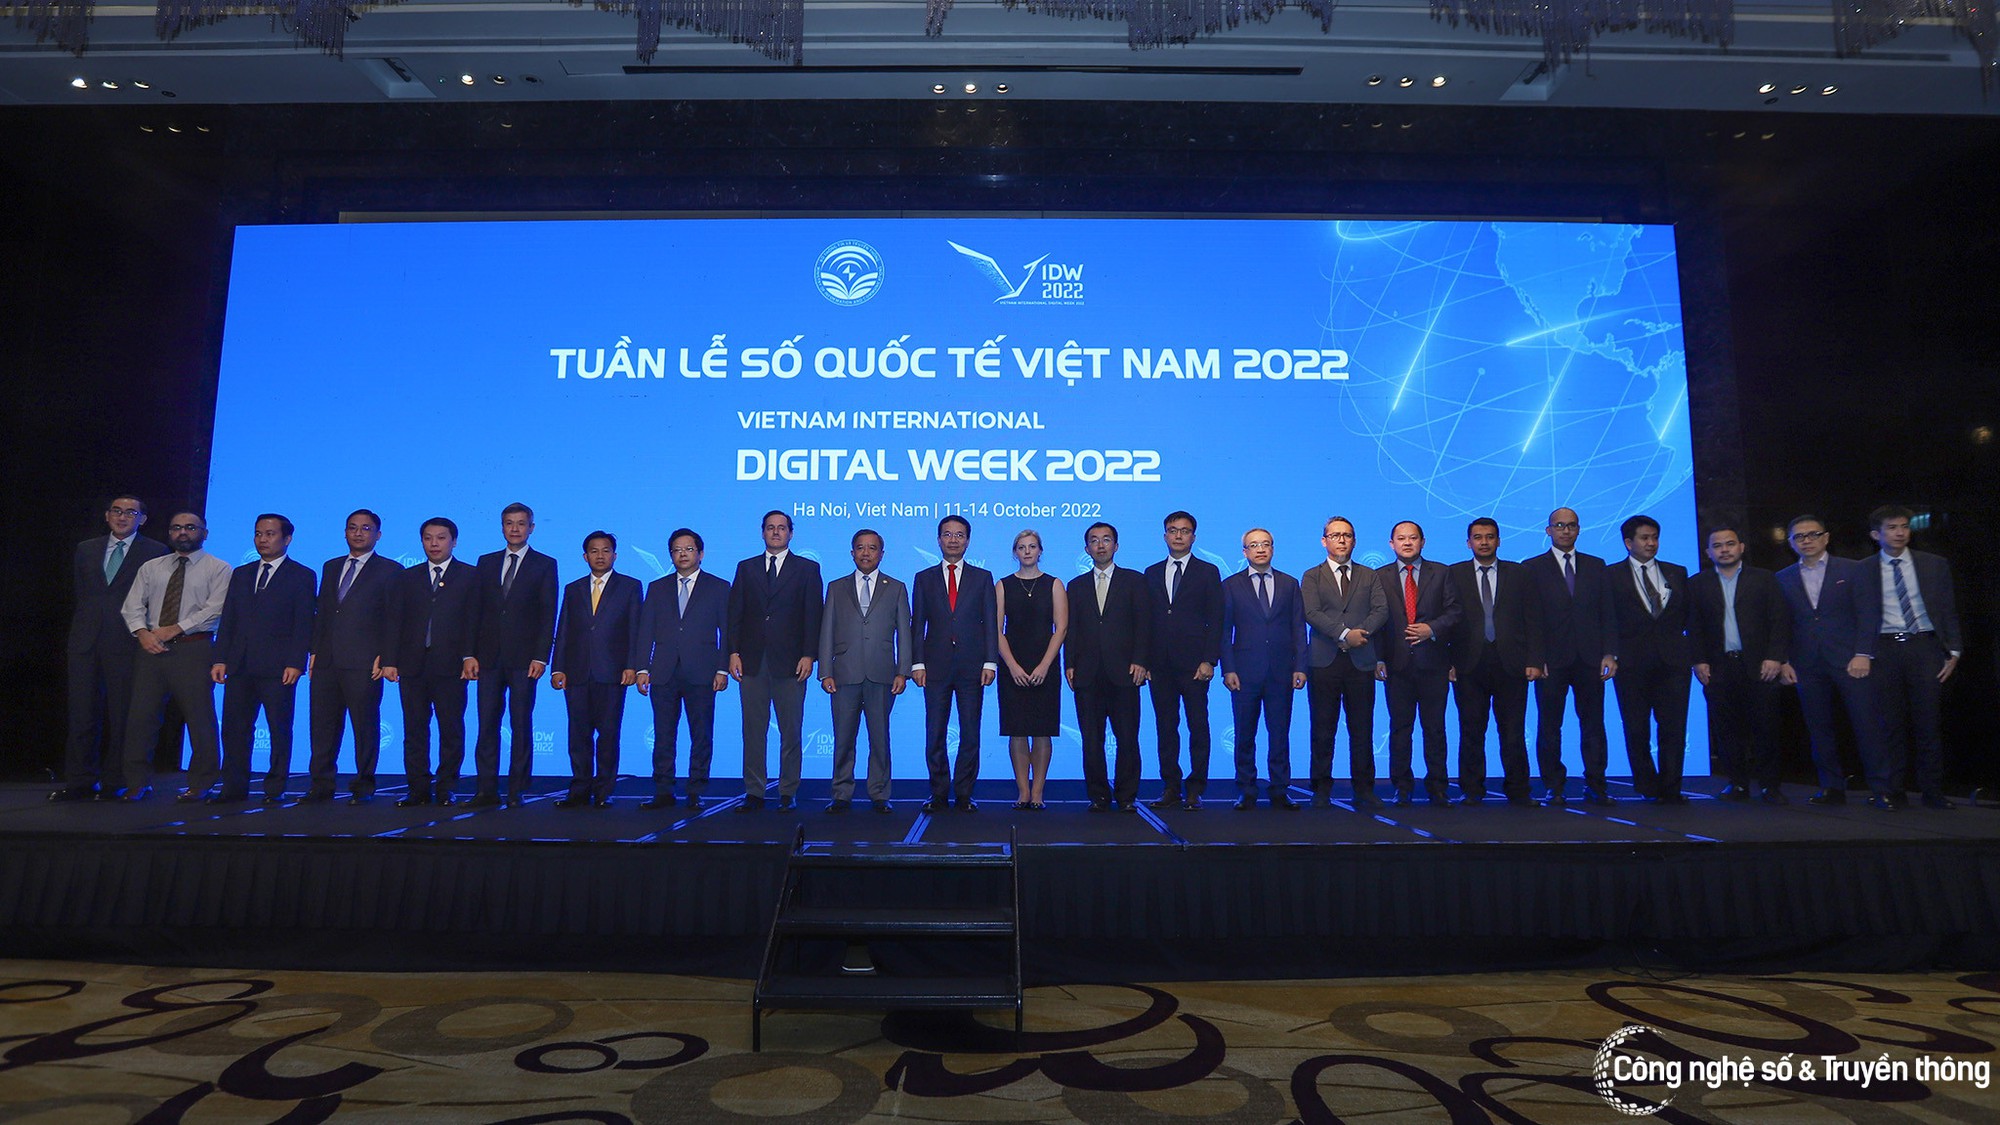 Khai mạc Tuần lễ Số Quốc tế Việt Nam 2022 hướng tới tương lai số bền vững